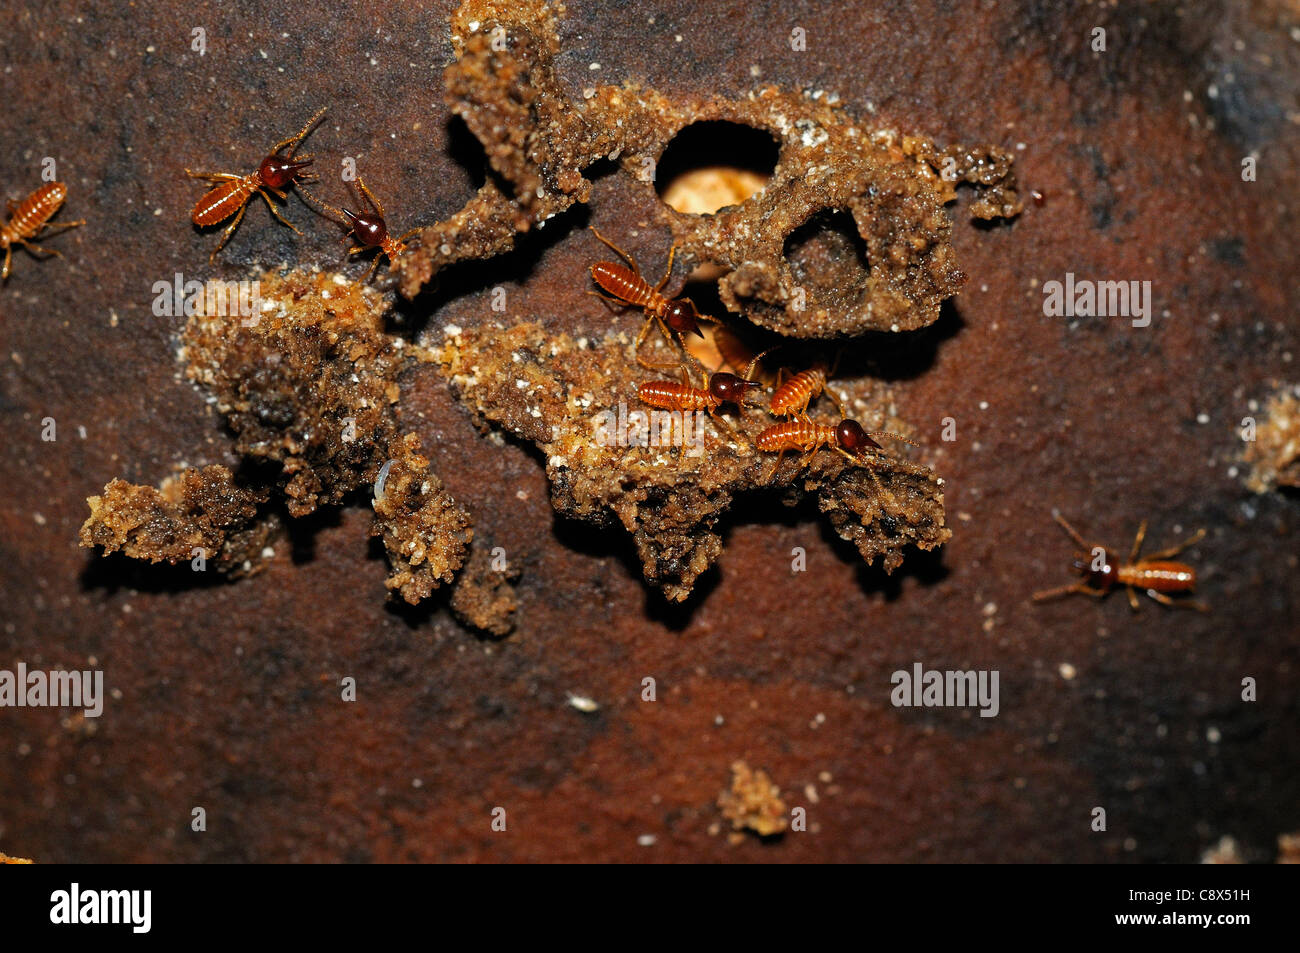 Termites Nasutitermes Nasute (soldats) à l'entrée du nid, Parc national Yasuni, en Equateur Banque D'Images